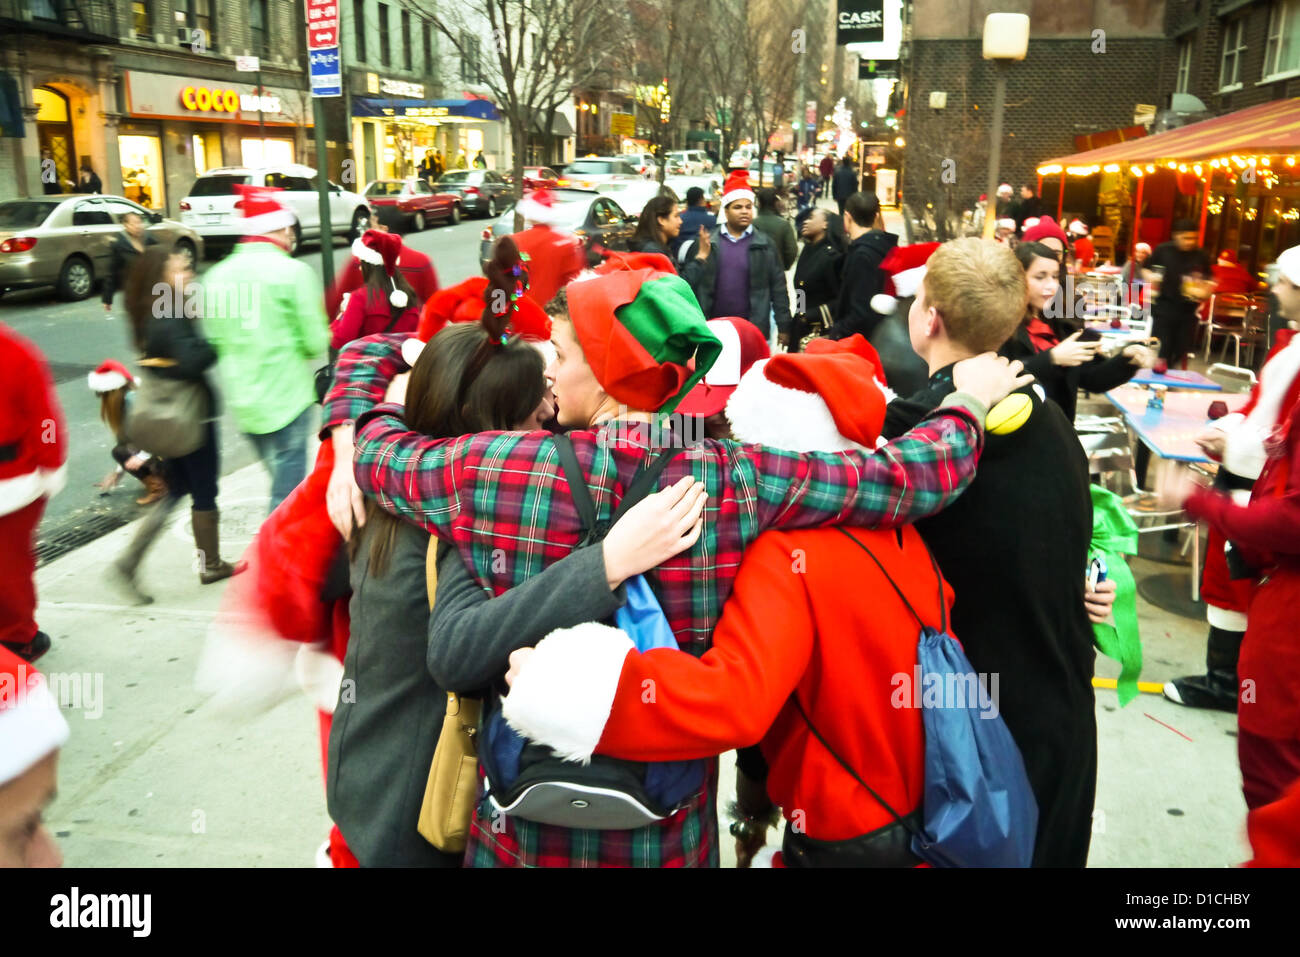 NEW YORK, NY - 15 dicembre: Revelers abbracciate uno un altro mentre vestiti da Babbo Natale durante l'annuale evento SantaCon Dicembre 15, 2012 in New York City. (Foto di Donald Bowers) Foto Stock